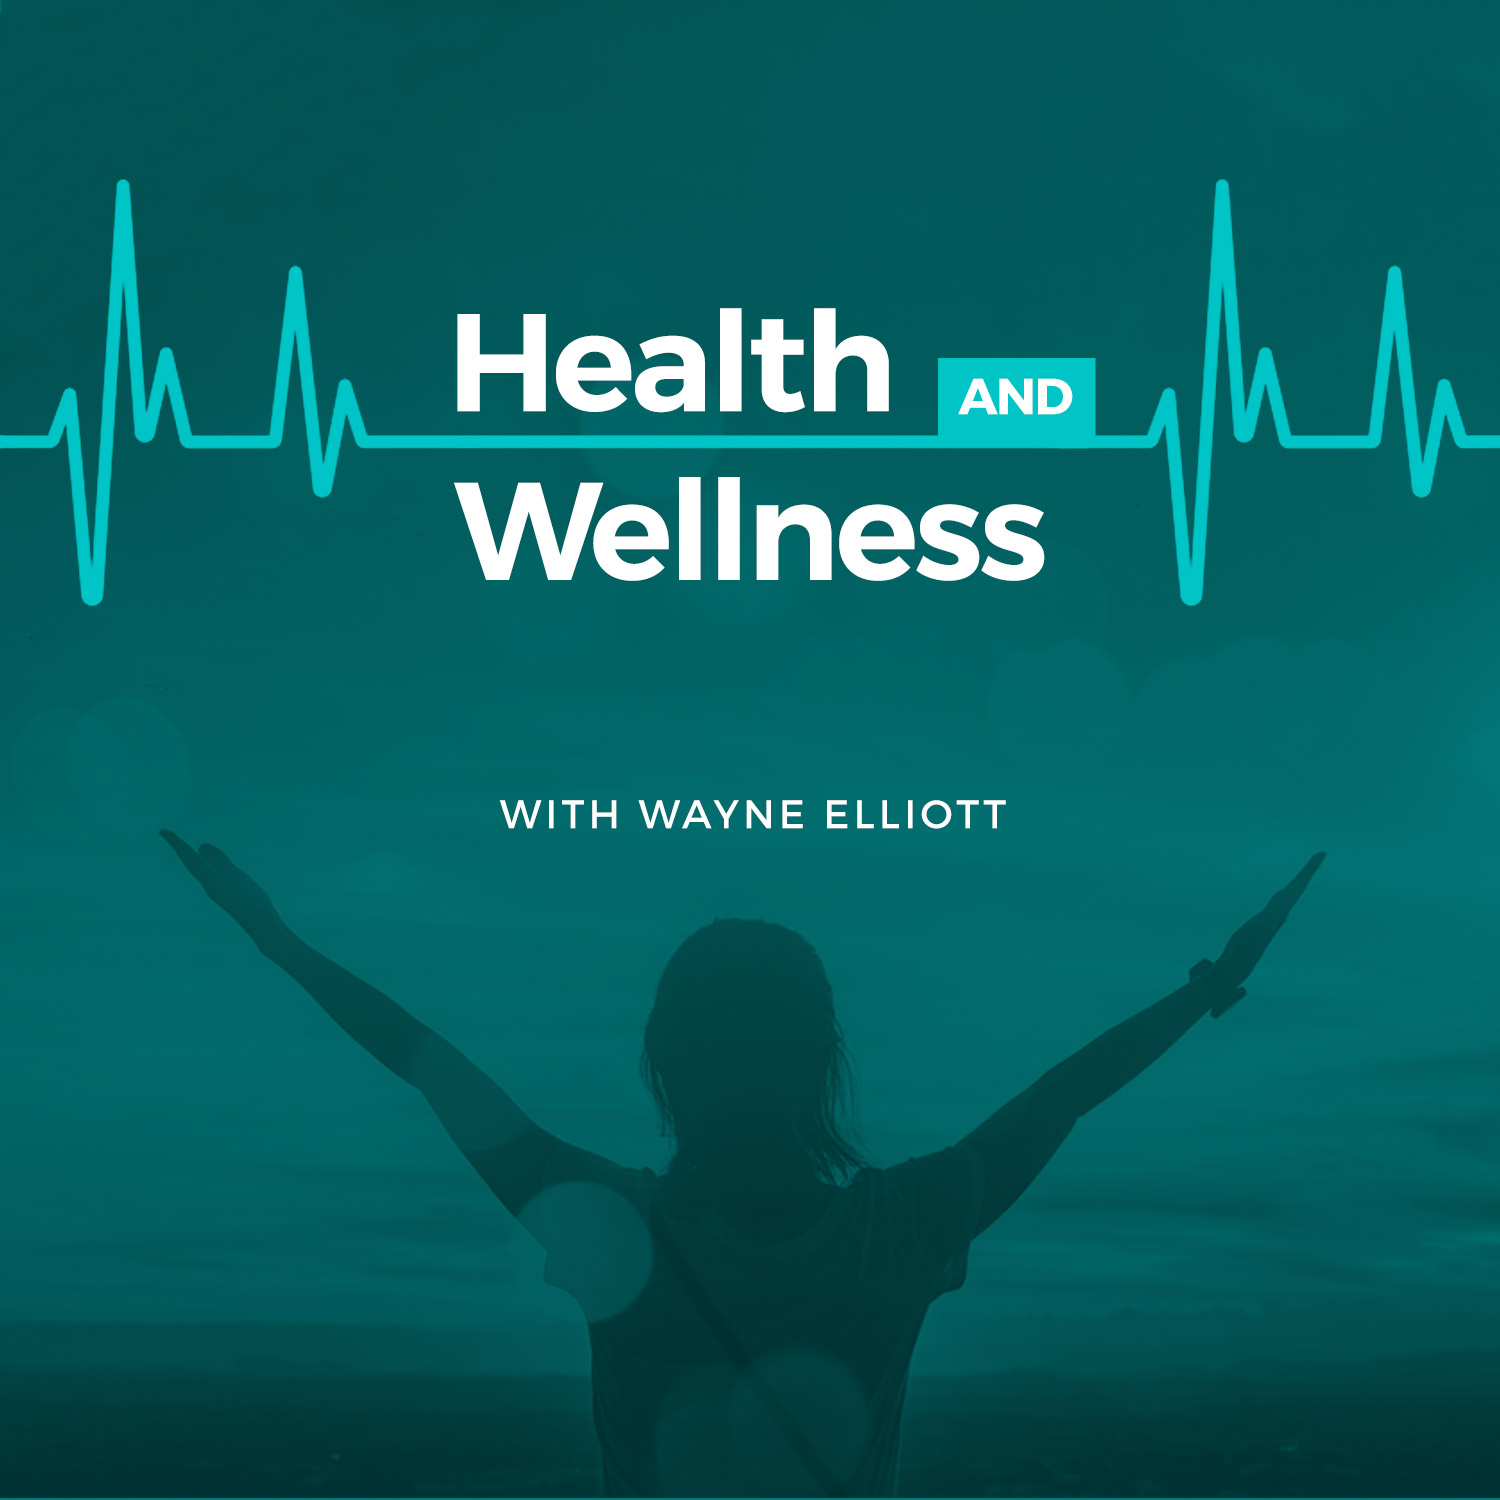 Health & Wellness with Wayne Elliott - March 27